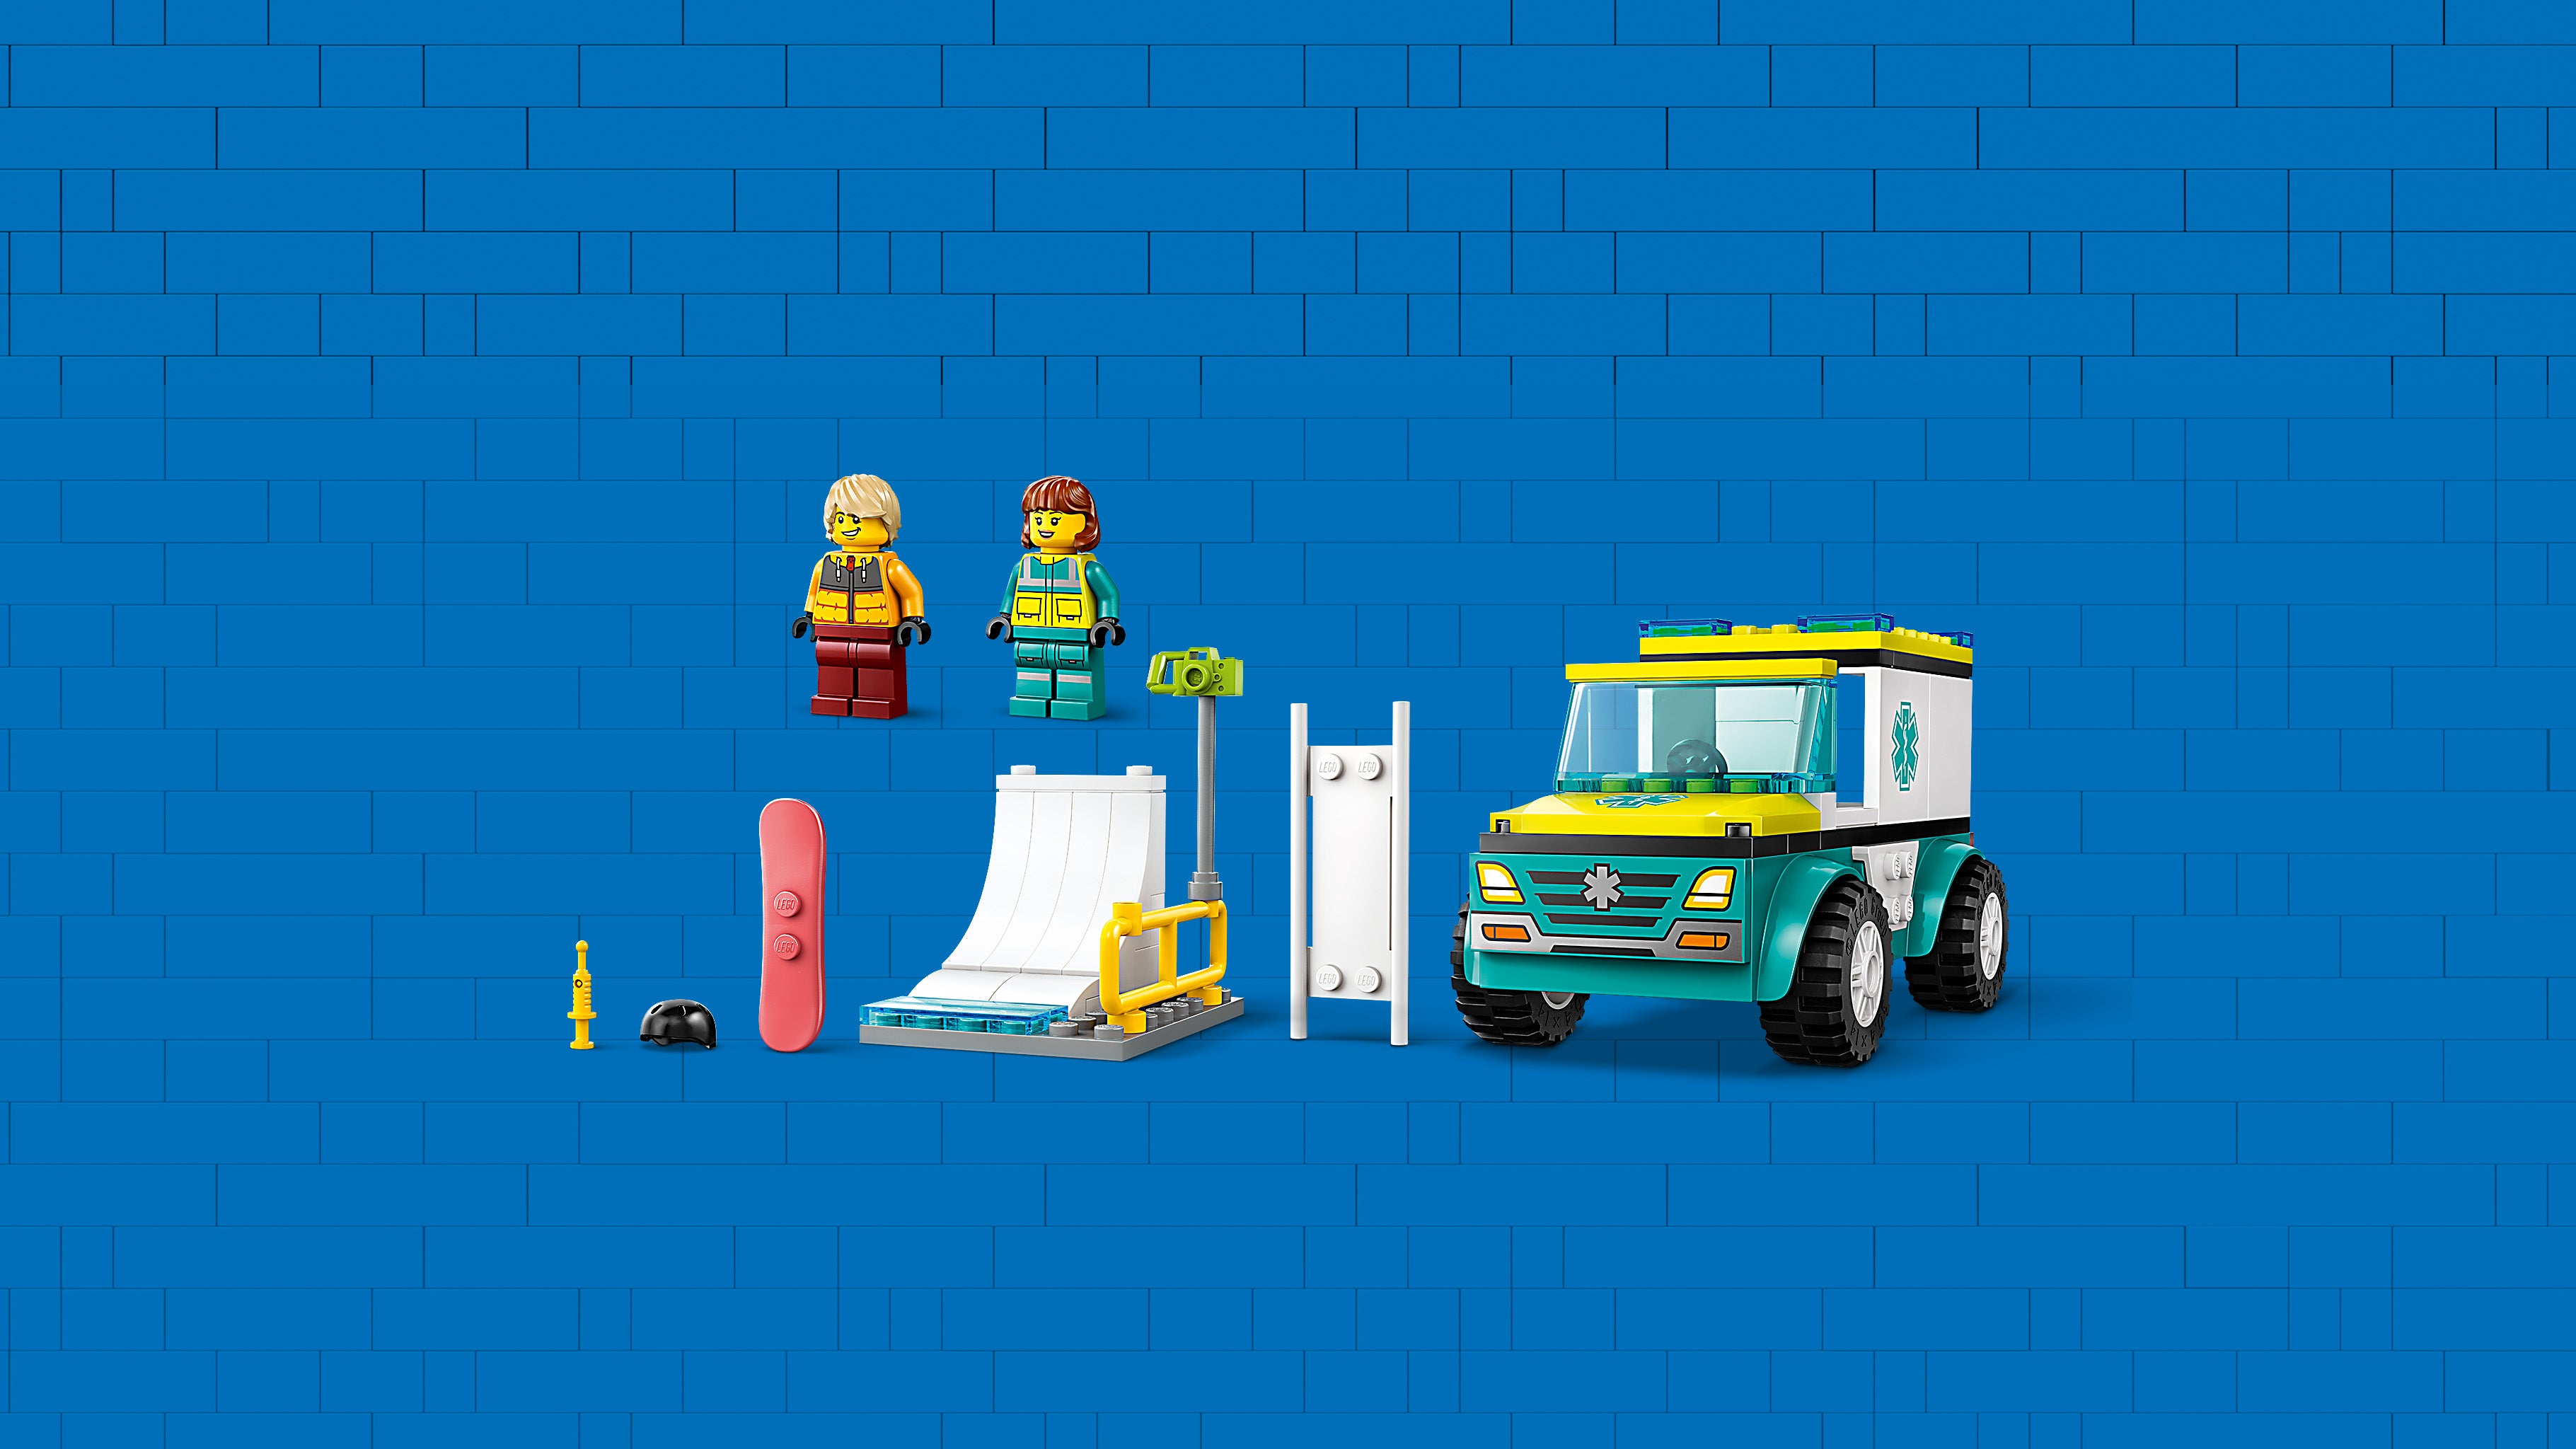 Lego 60403 Emergency Ambulance and Snowboarder